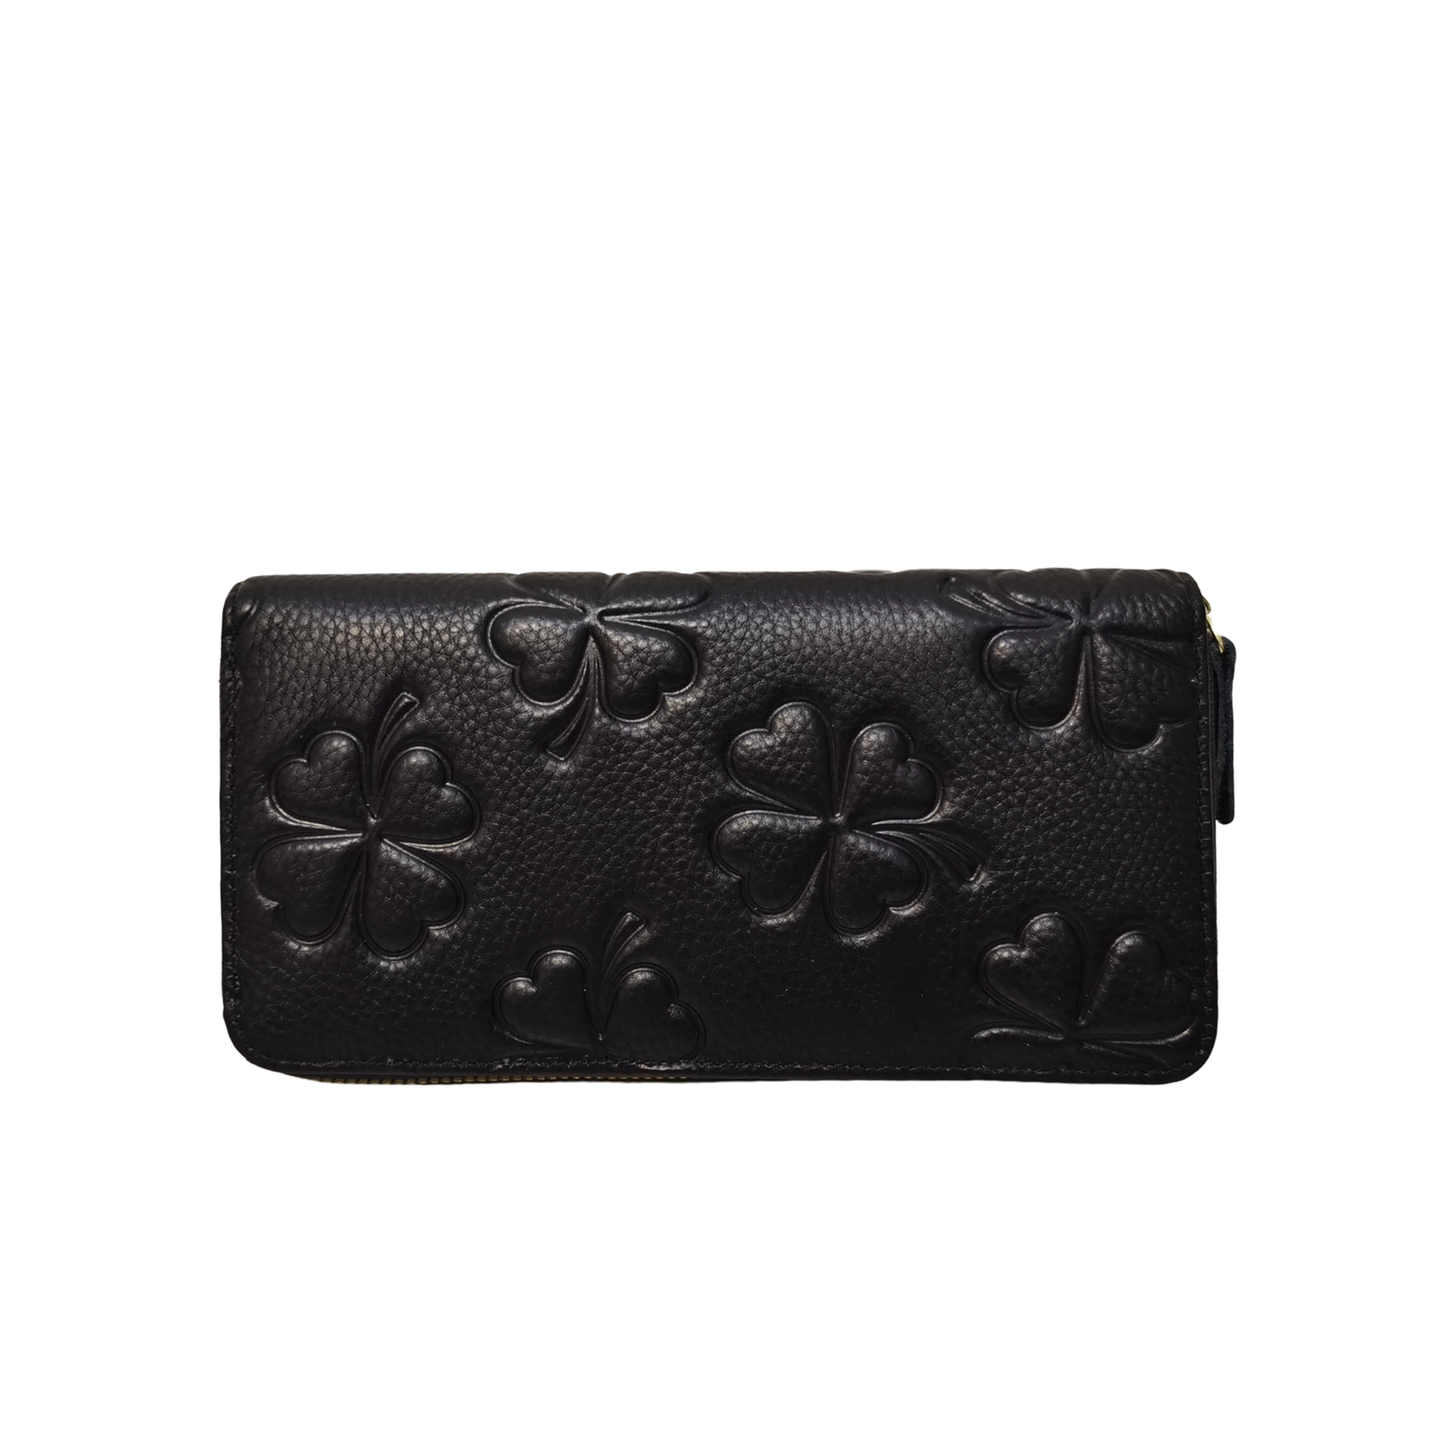 Women's genuine cowhide embossed leather long wallet